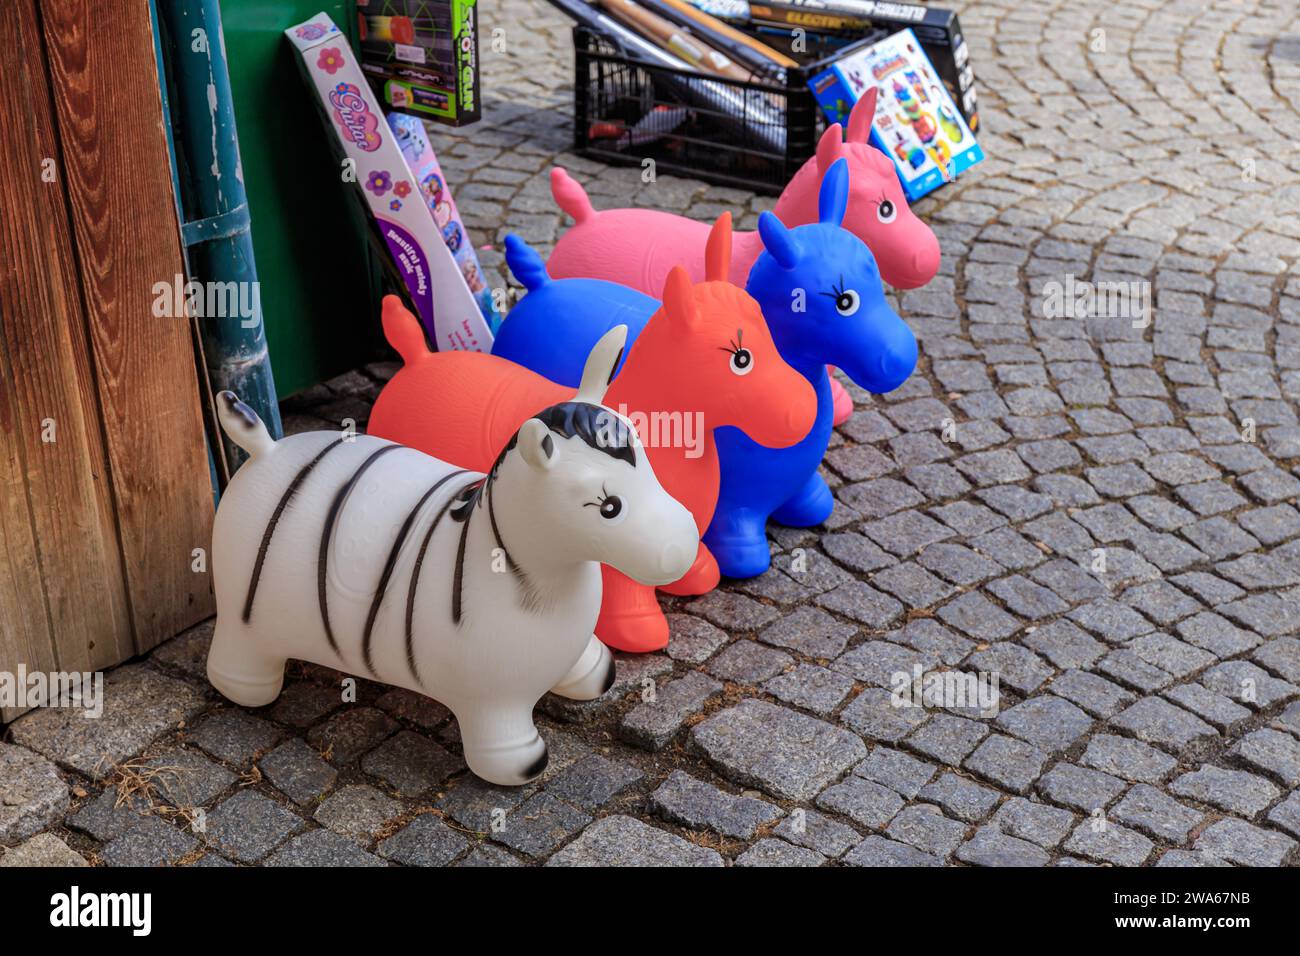 Praga, Repubblica Ceca - 4 aprile 2018: Pony giocattolo gonfiabile presso la bancarella del mercato Prazska Trznice Foto Stock